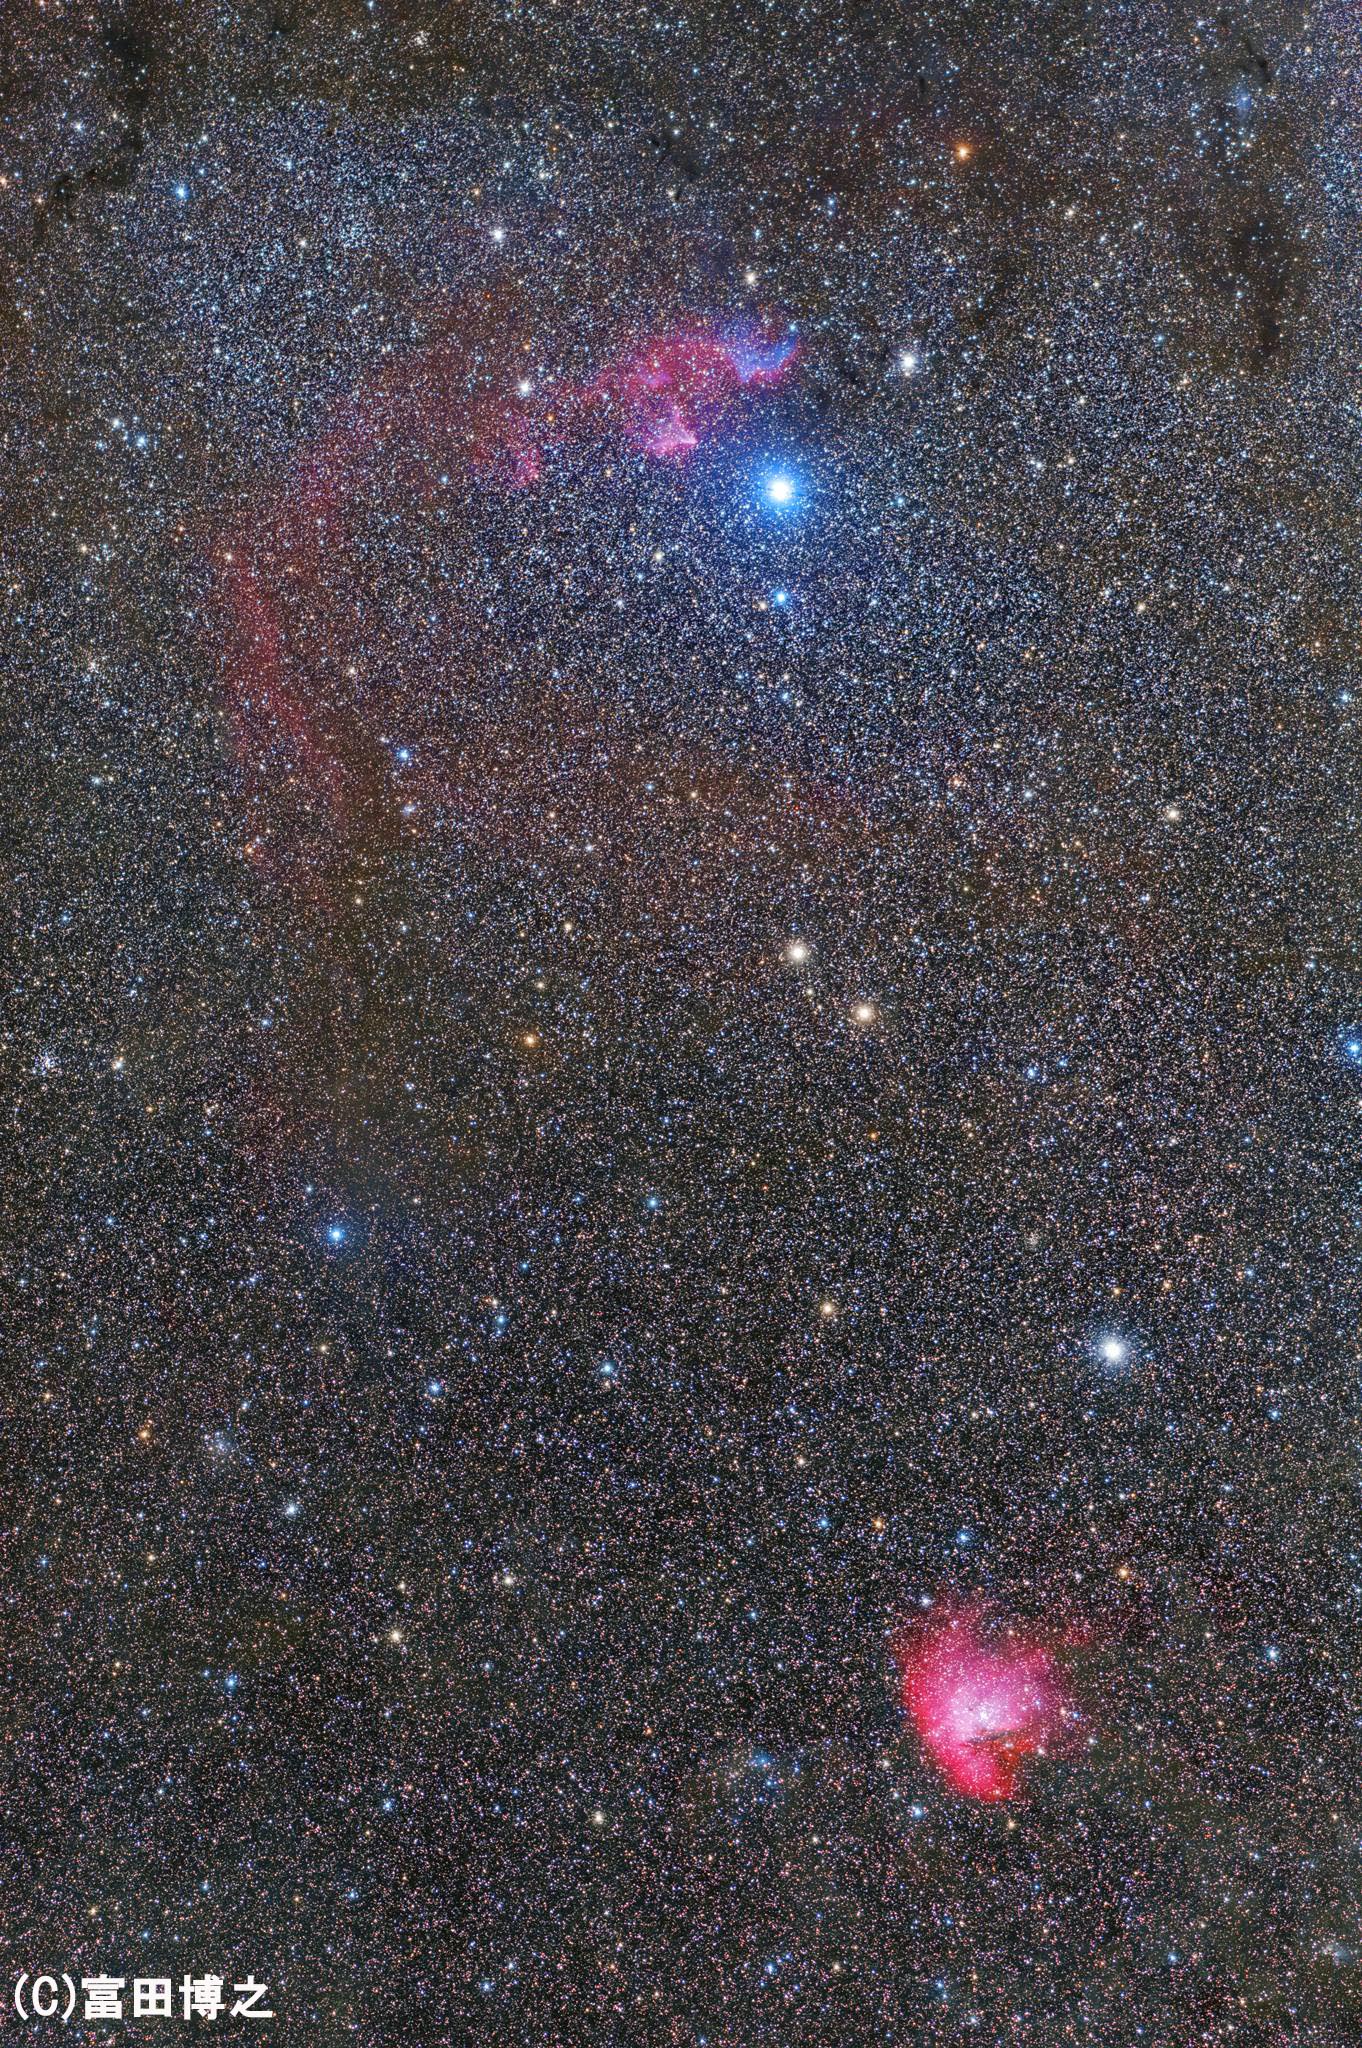 カシオペヤ座中心部・γ星ツィーの輝きと色とりどりの星雲